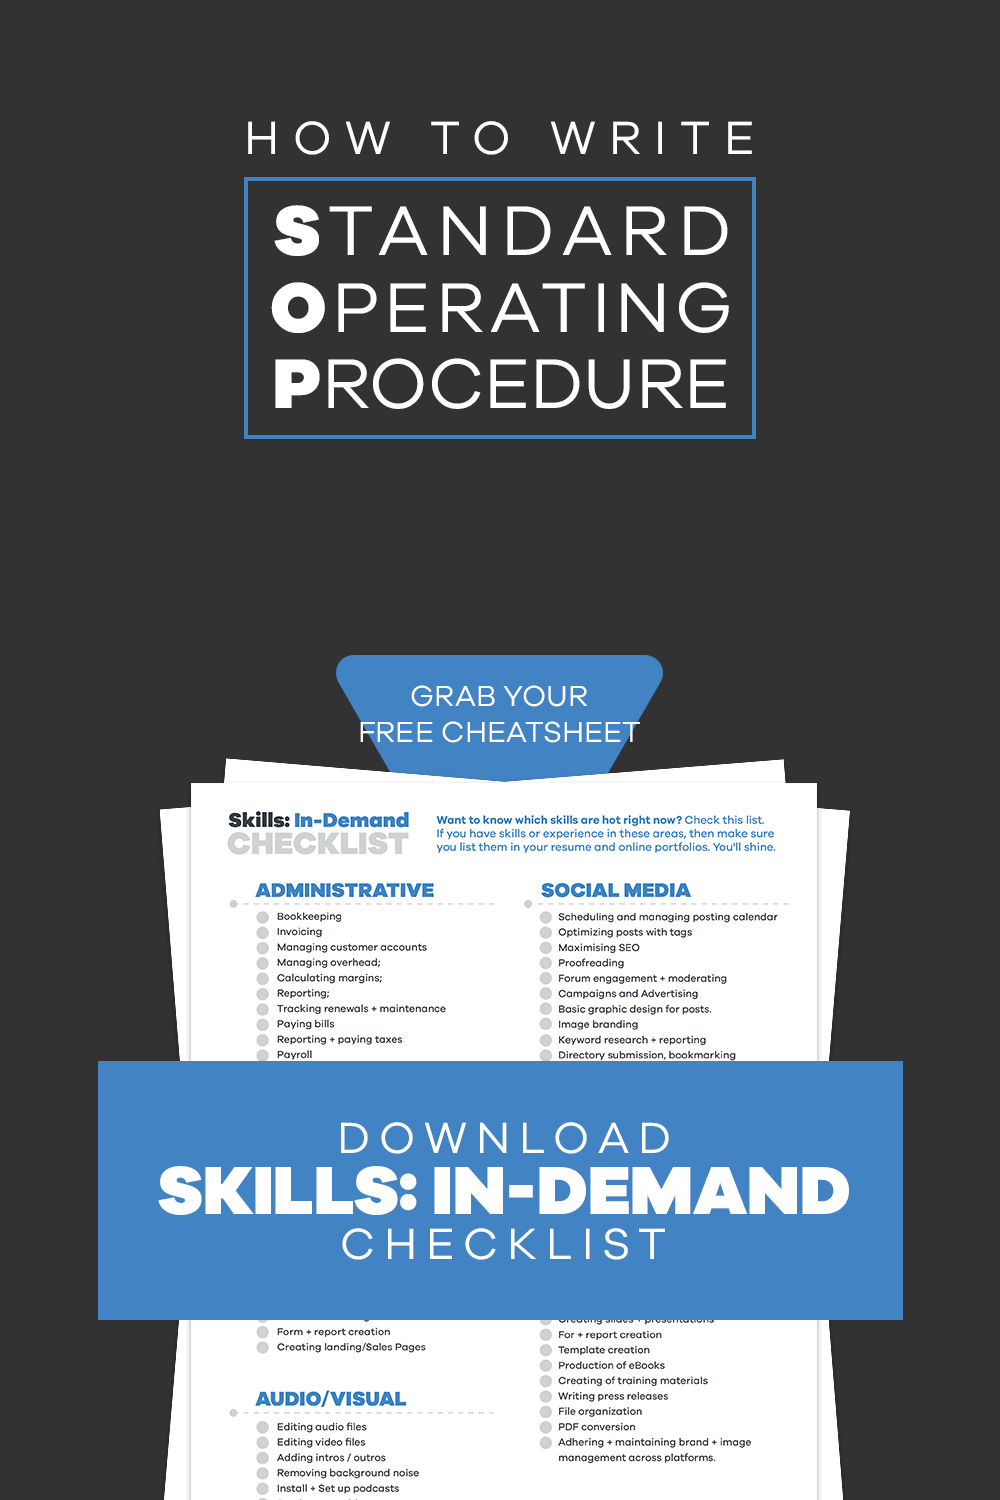 in demand skills checklist